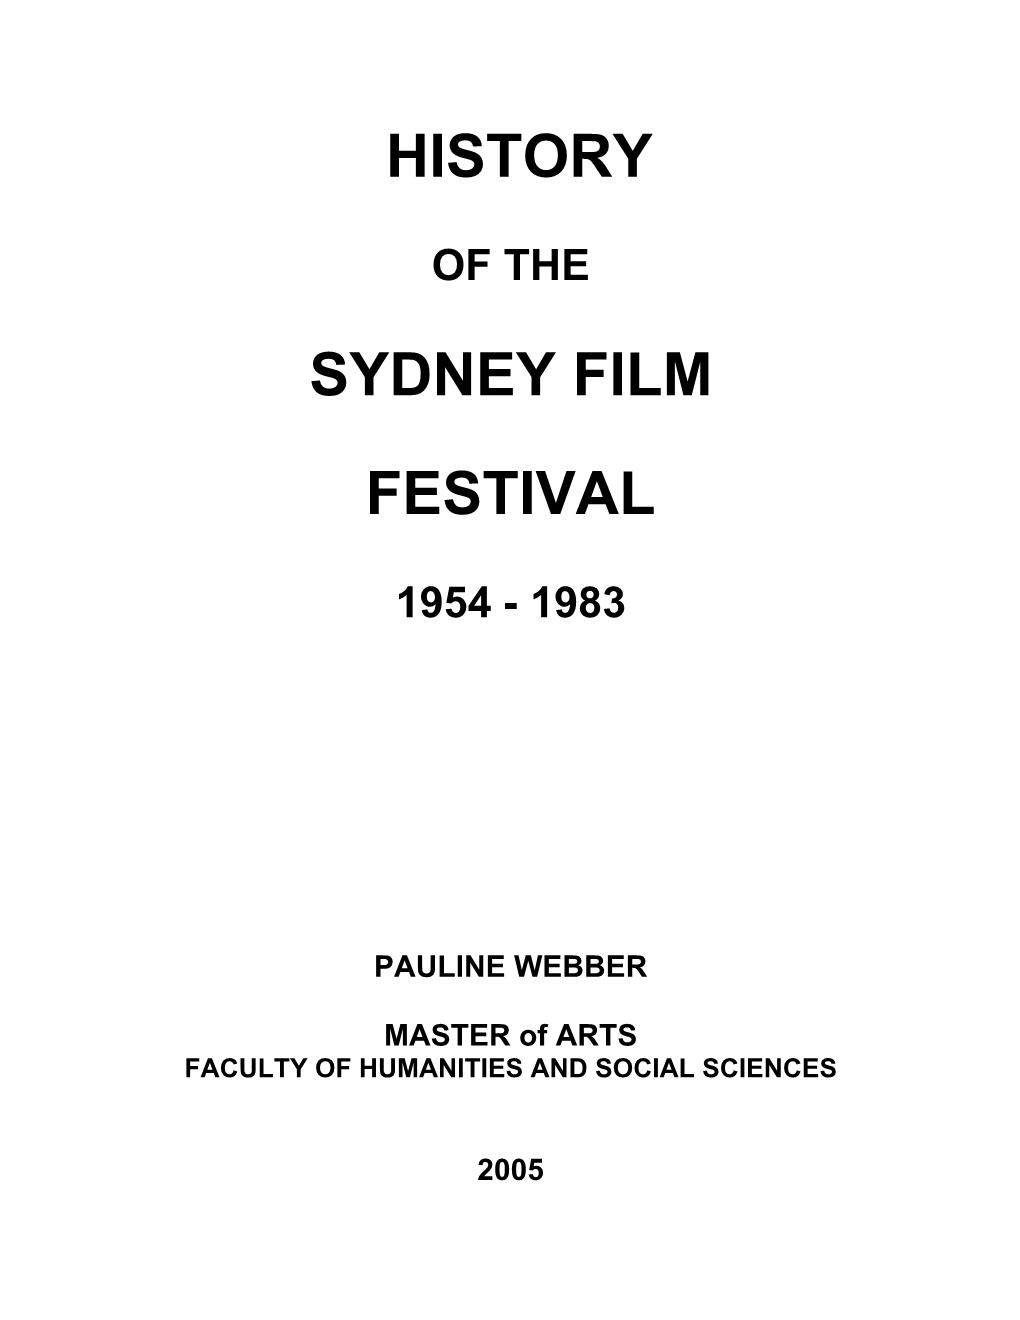 History Sydney Film Festival